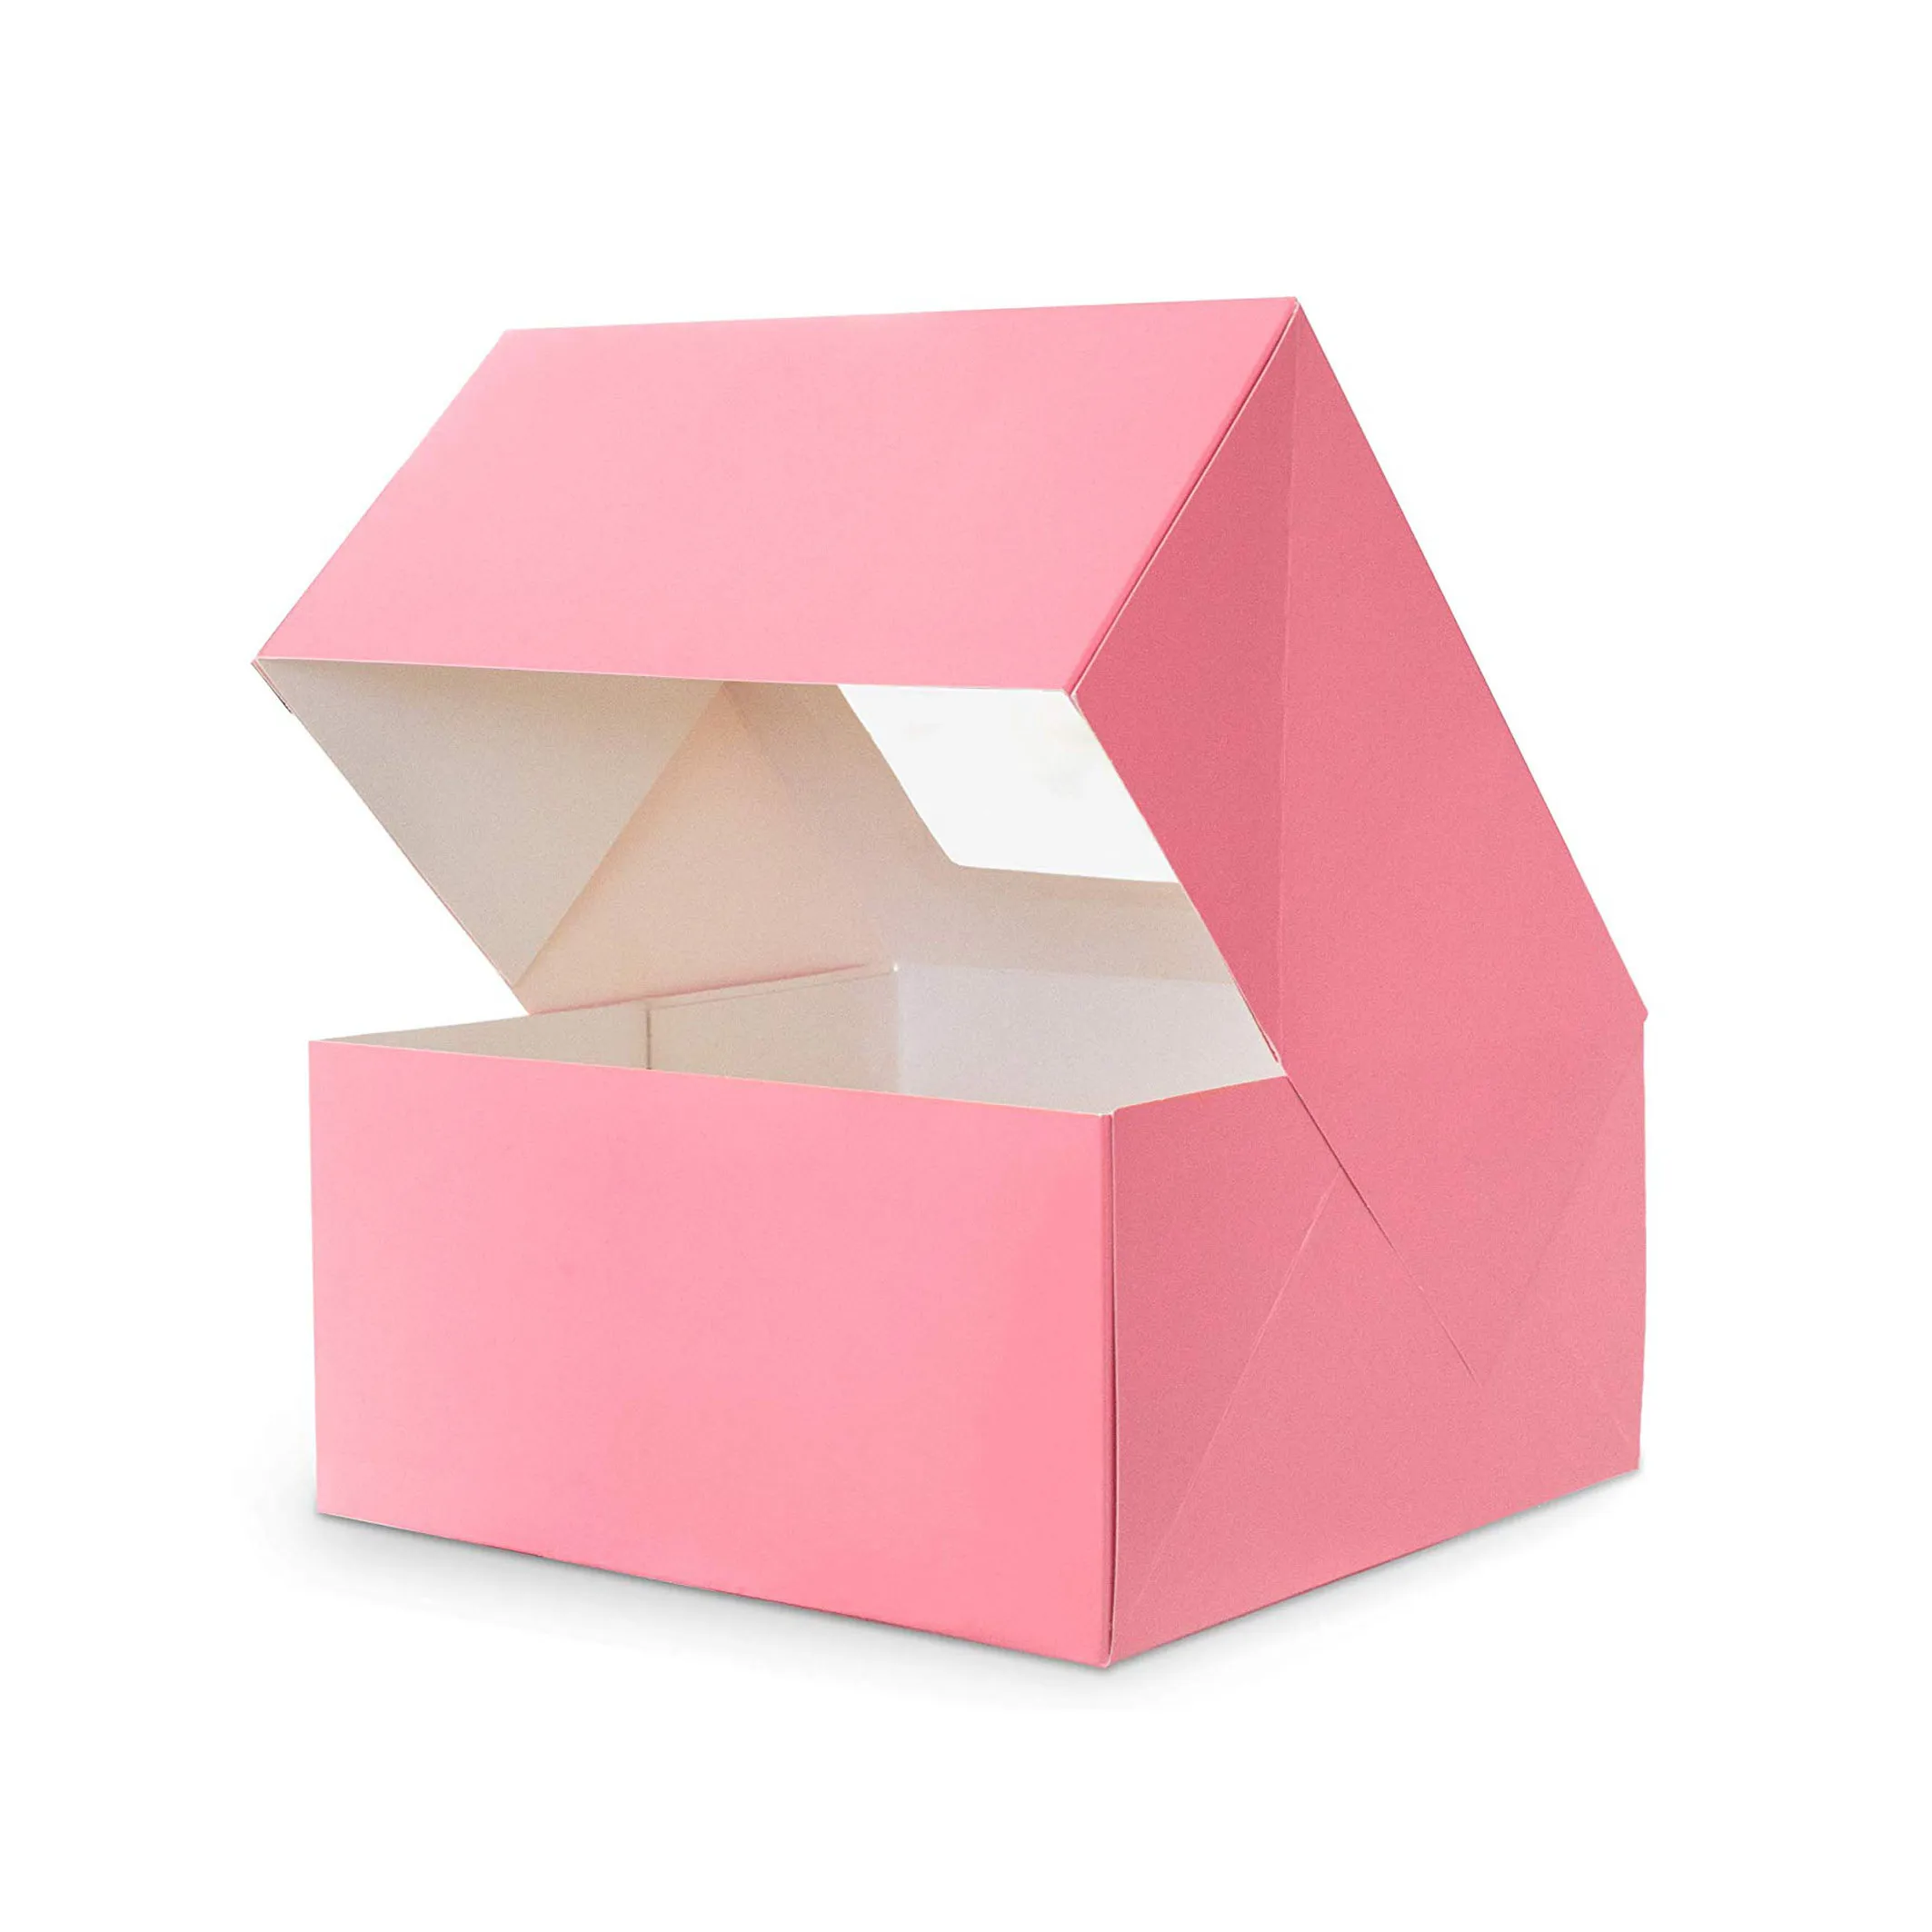 Cajas de papel personalizadas para pastel de pastelería, caja de embalaje de panadería con ventana transparente, color rosa, gran oferta, venta al por mayor